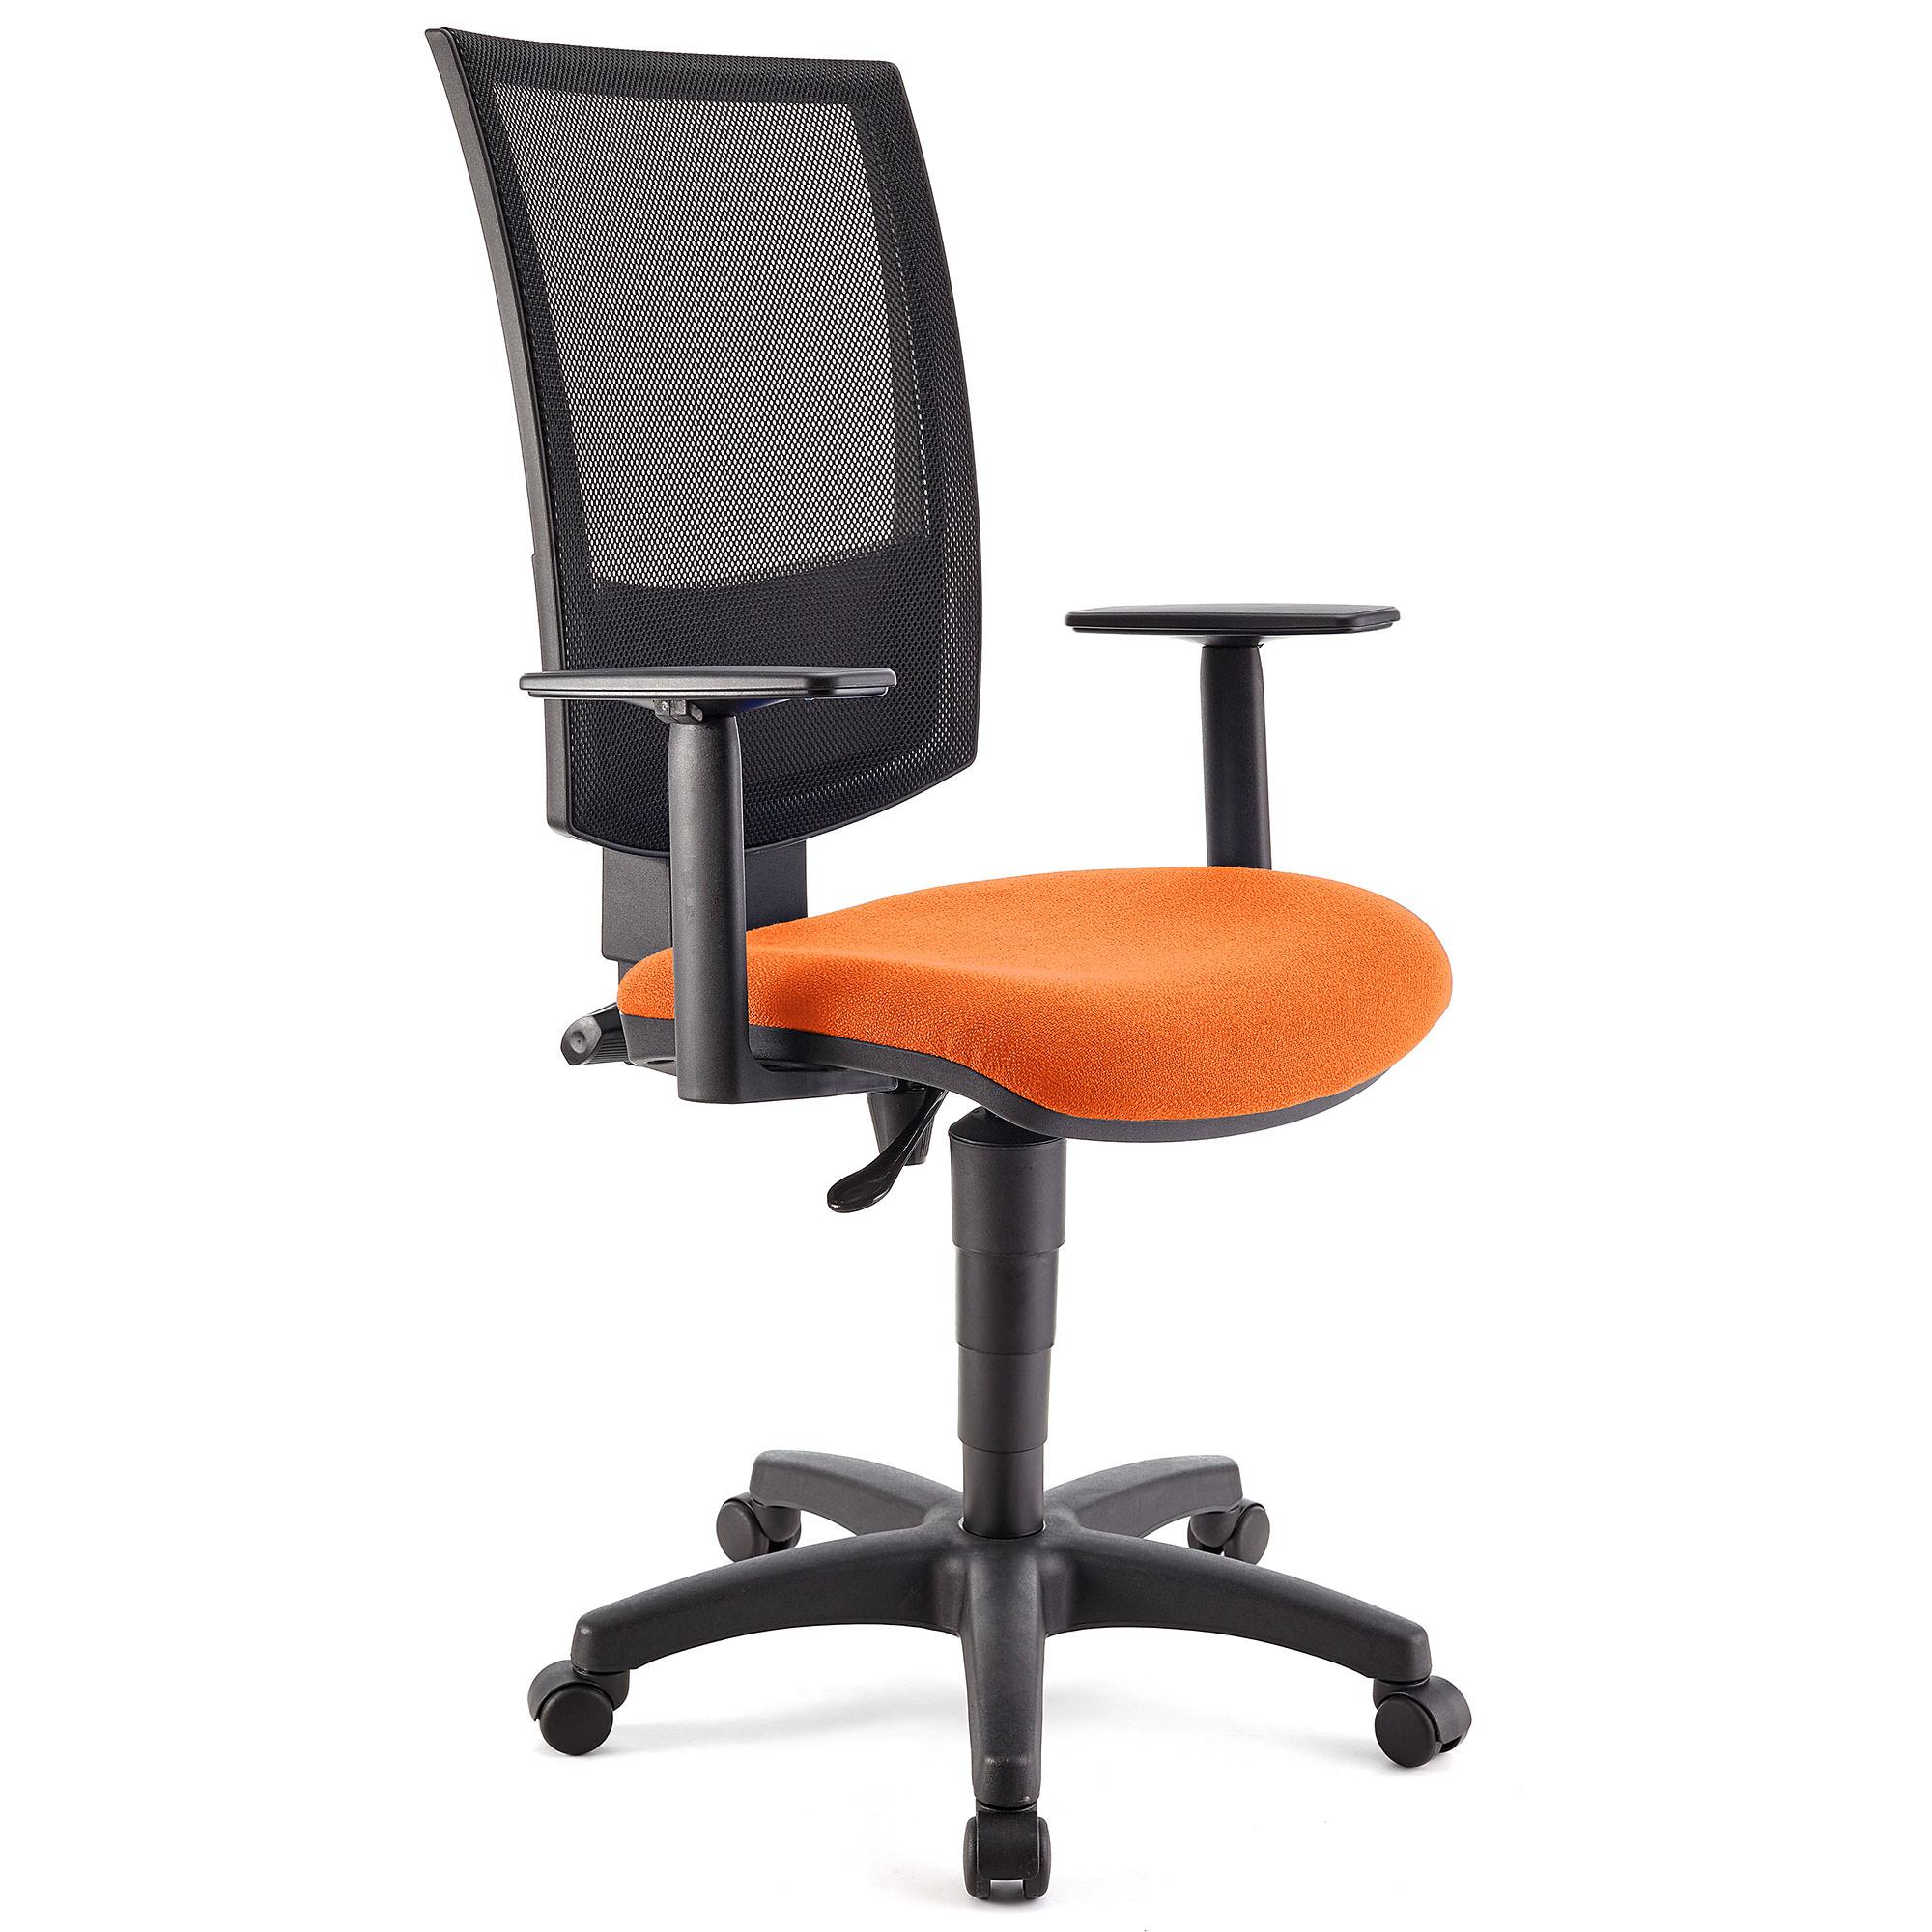 Bürostuhl PANDORA PLUS mit verstellbaren Armlehnen, Rückenlehne mit Netzbezug, dicke Polsterung, Farbe Orange